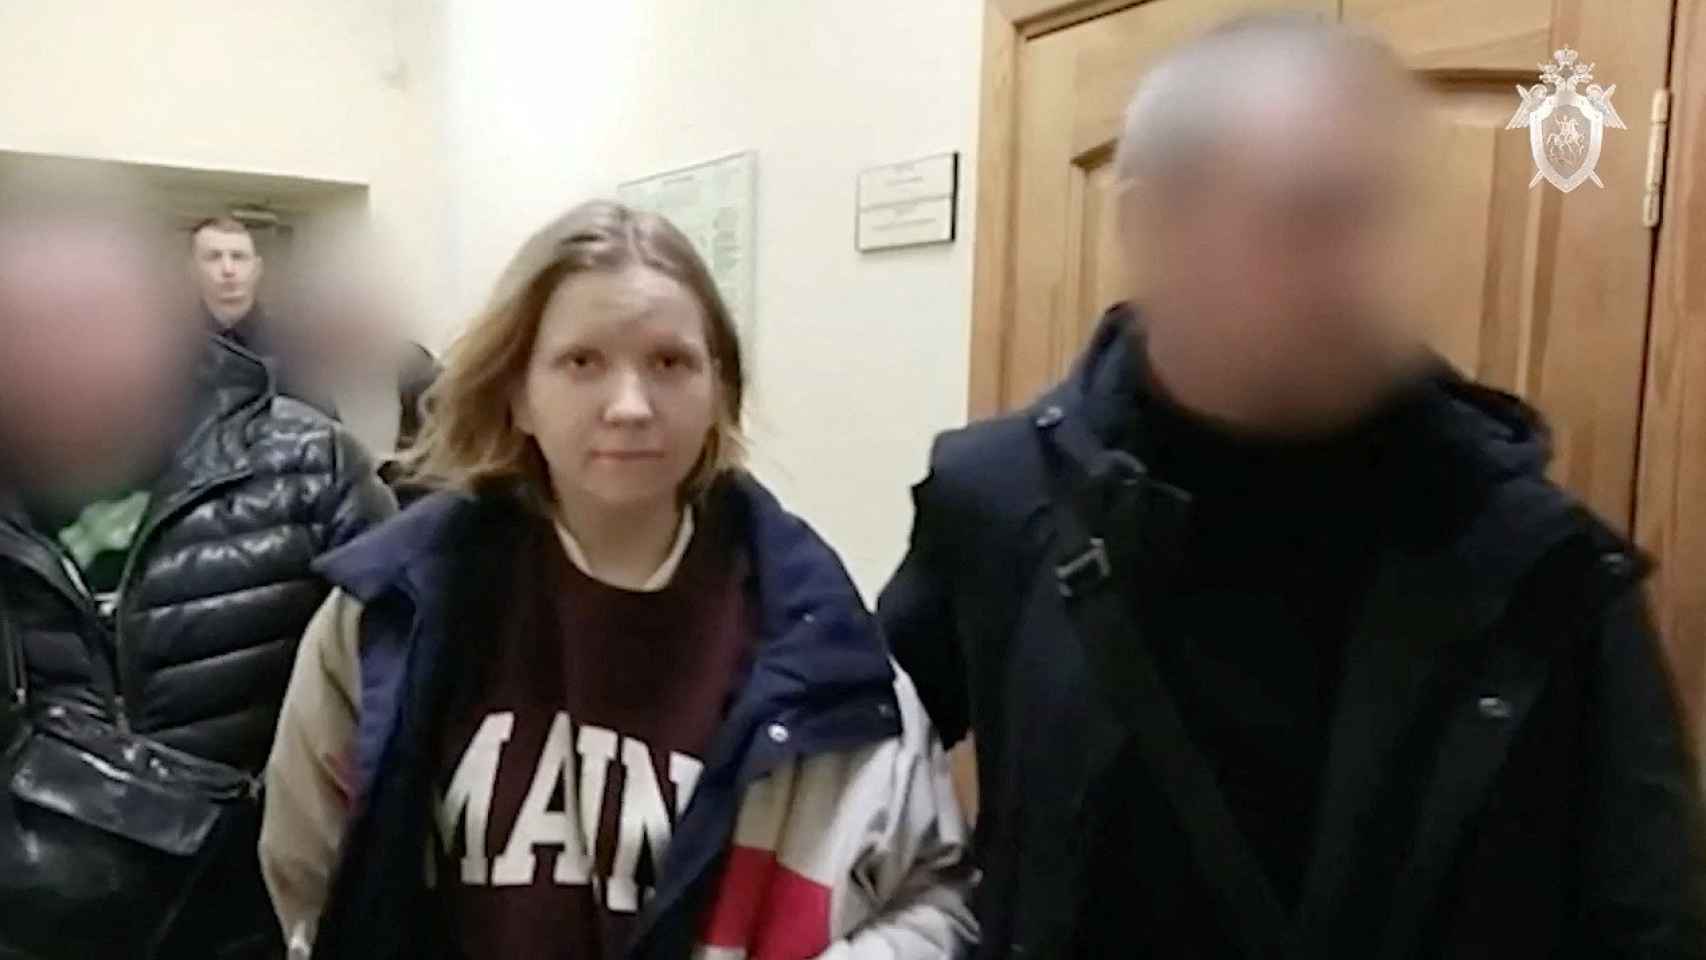 Momento de la detención de Darya Trepova, sospechosa del atentado de San Petersburgo.